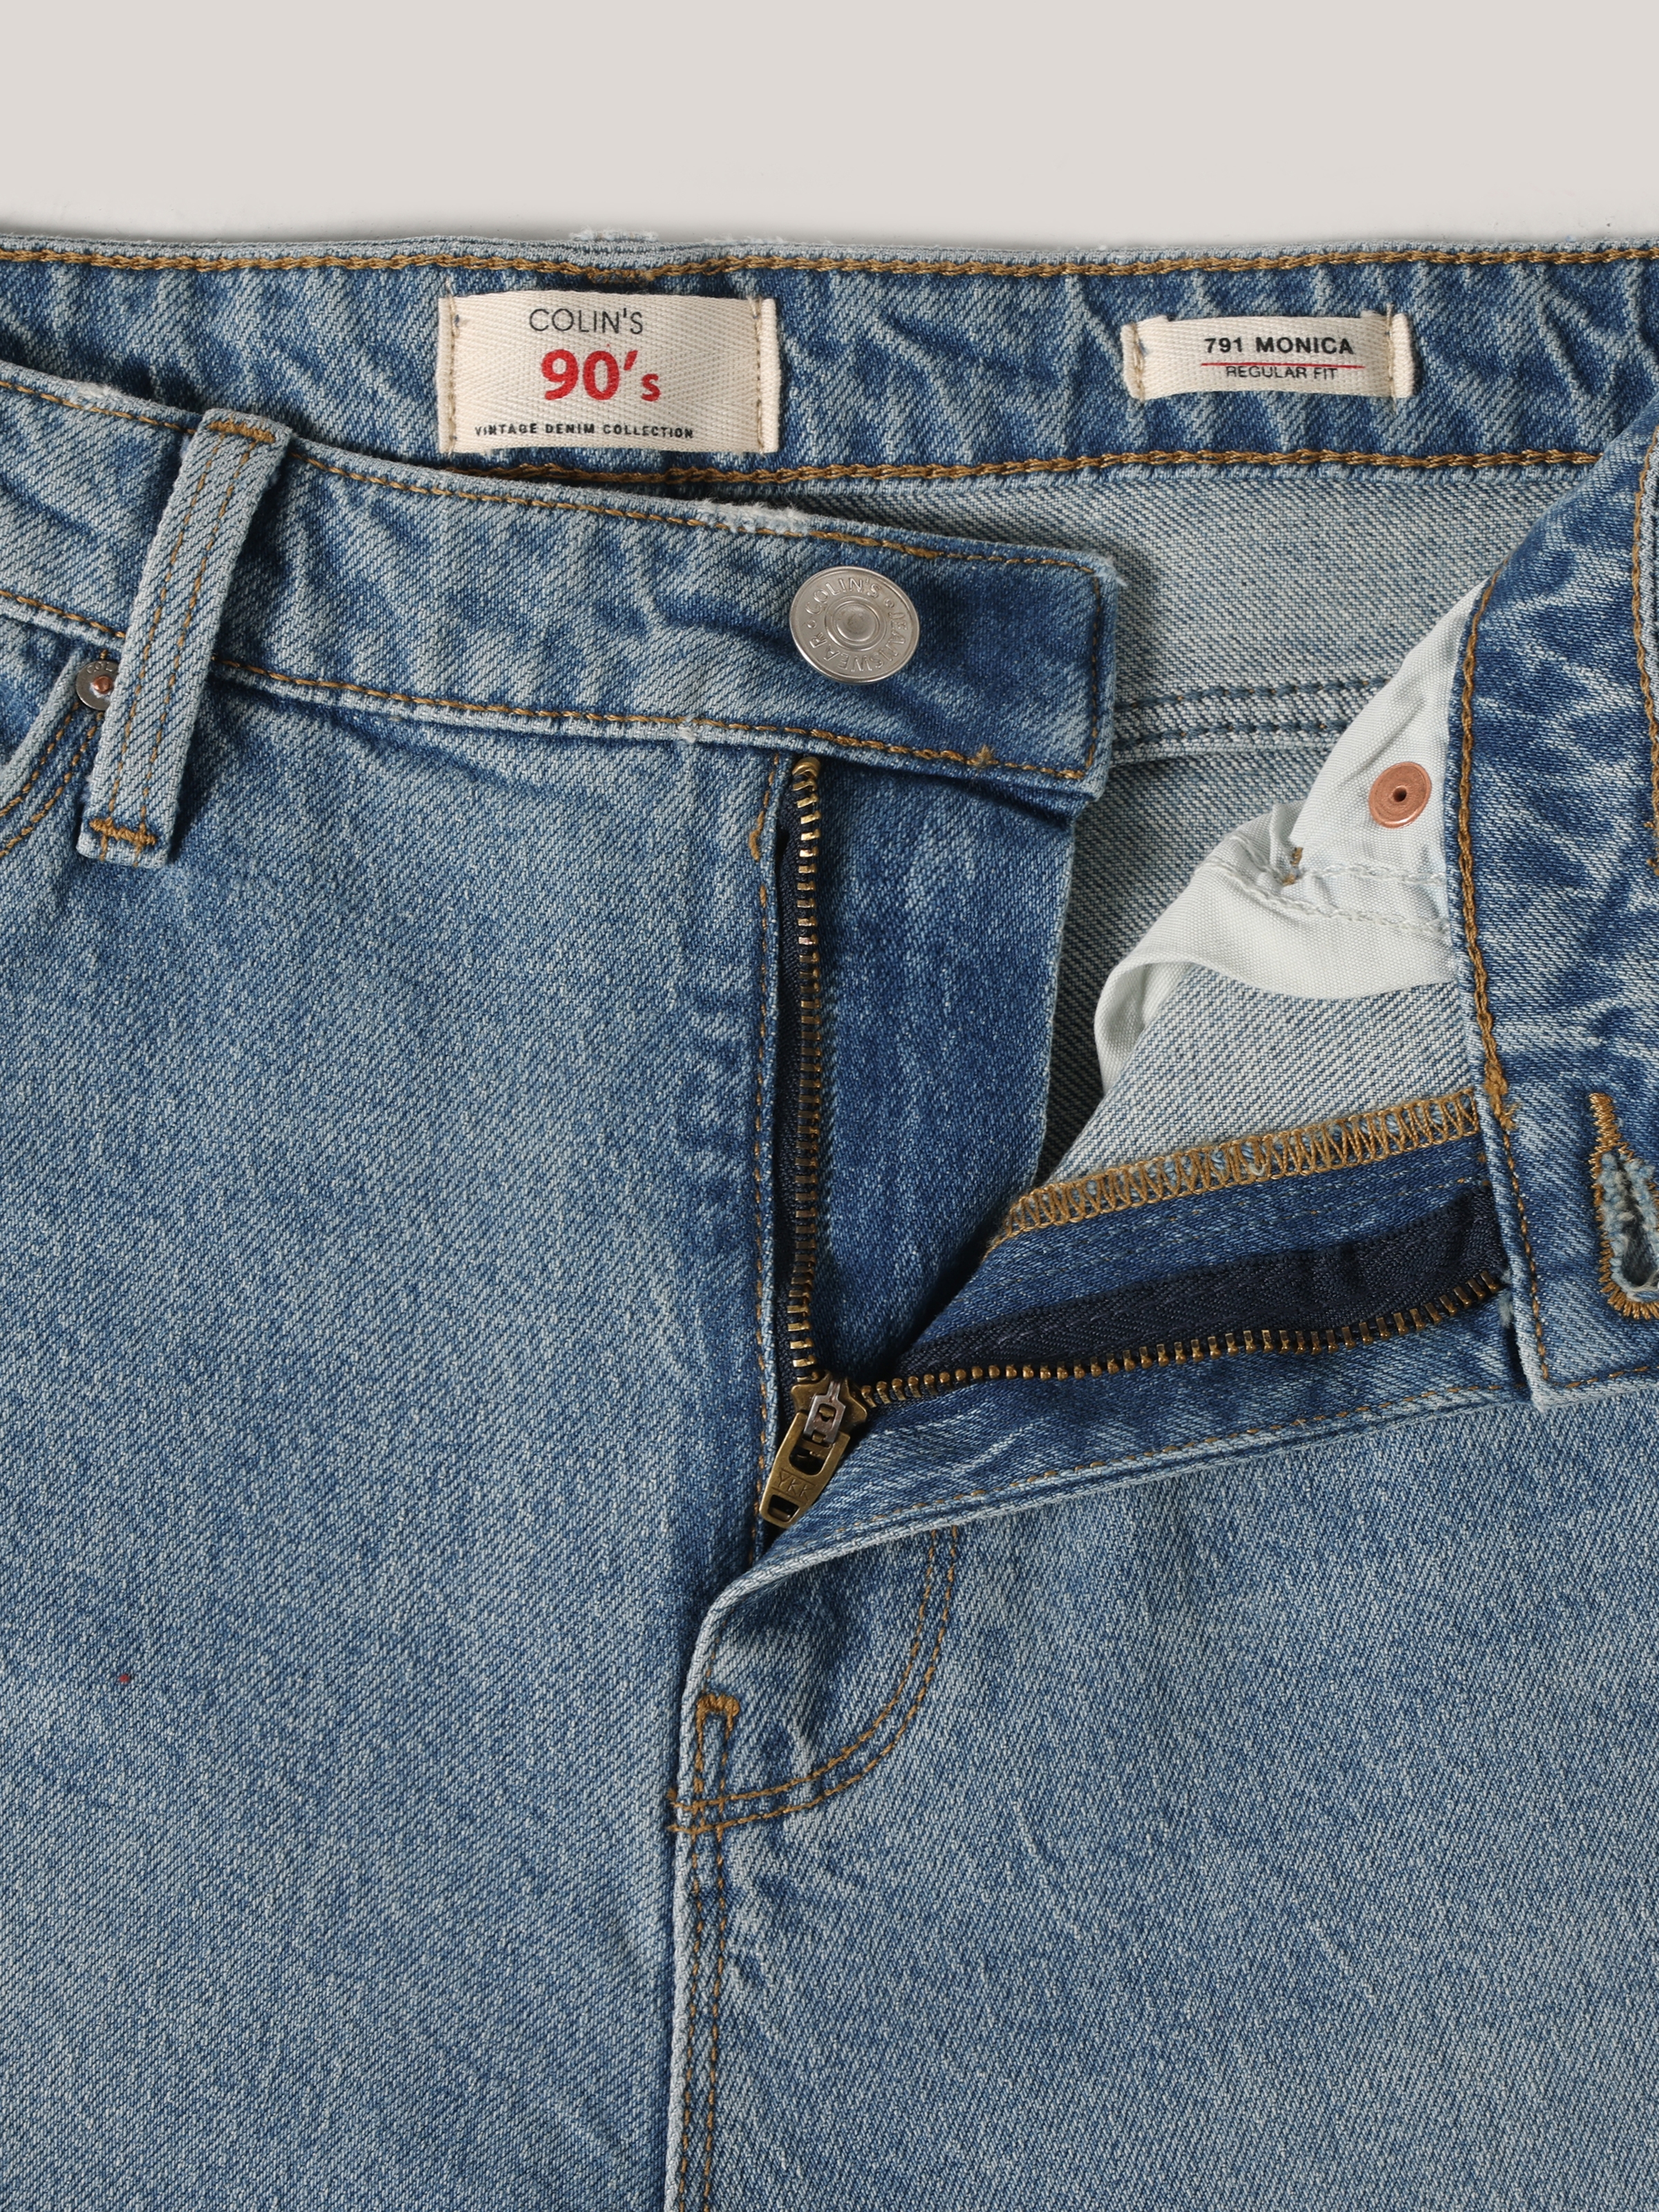 Afișați detalii pentru Pantaloni De Dama Albastru Regular Fit 791 MONICA 